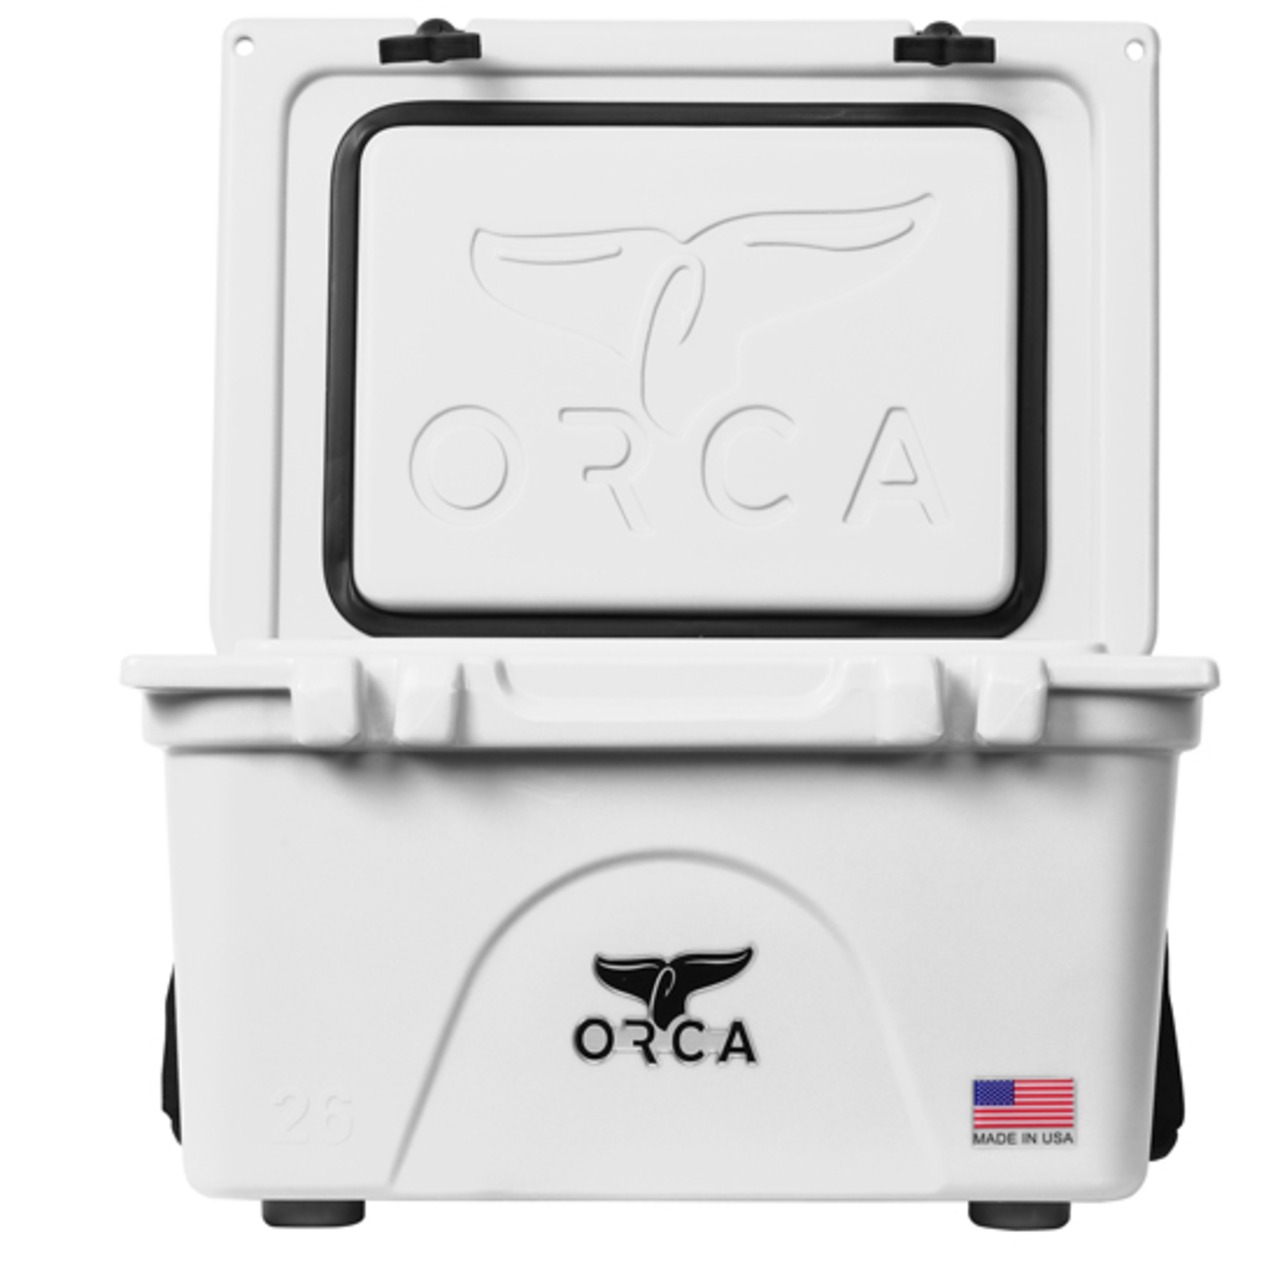 ORCA Coolers 26 Quart オルカ クーラー ボックス キャンプ用品 アウトドア キャンプ グッズ 保冷 クッキング ドリンク オルカクーラーズジャパン